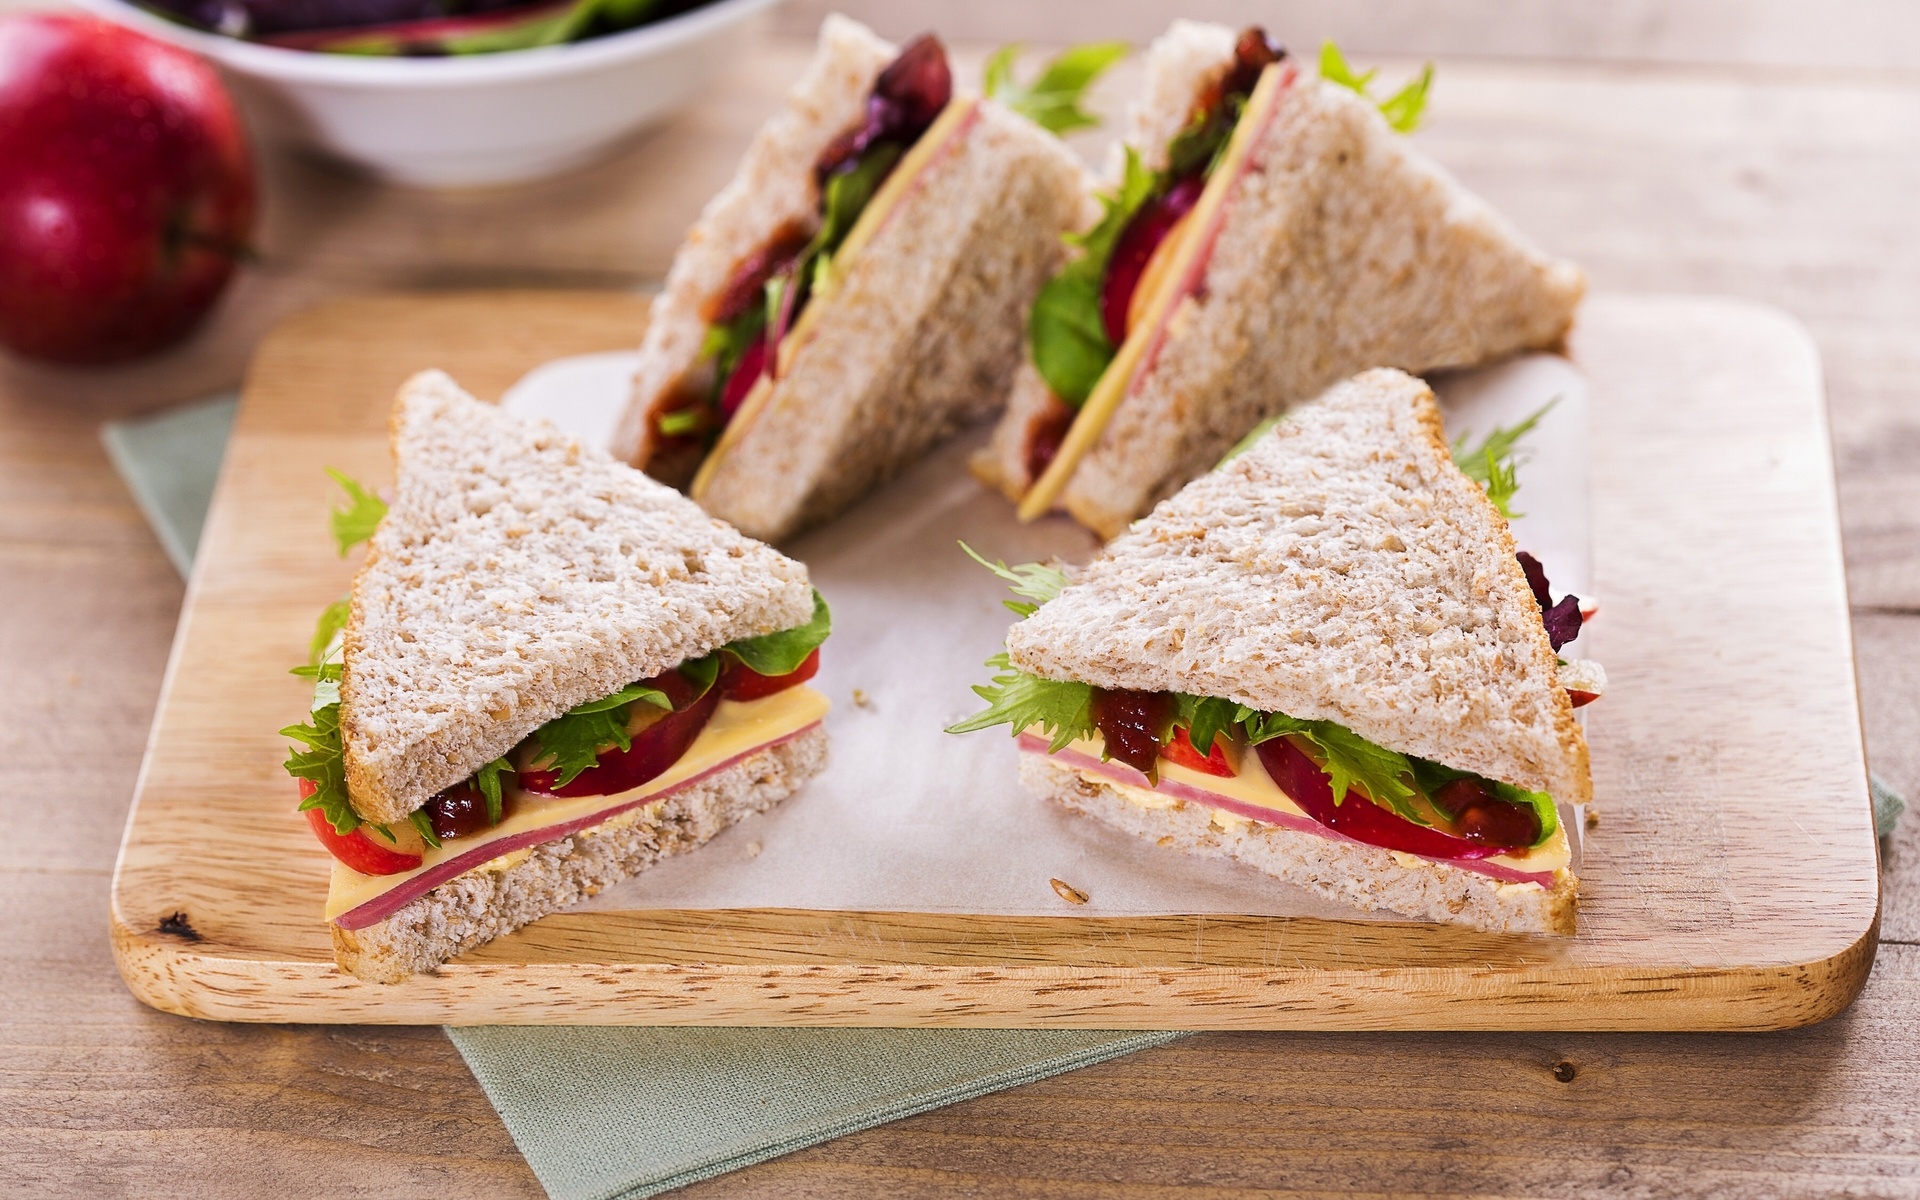 Одним из самых популярных блюд для перекуса по всему миру считается сэндвич. 